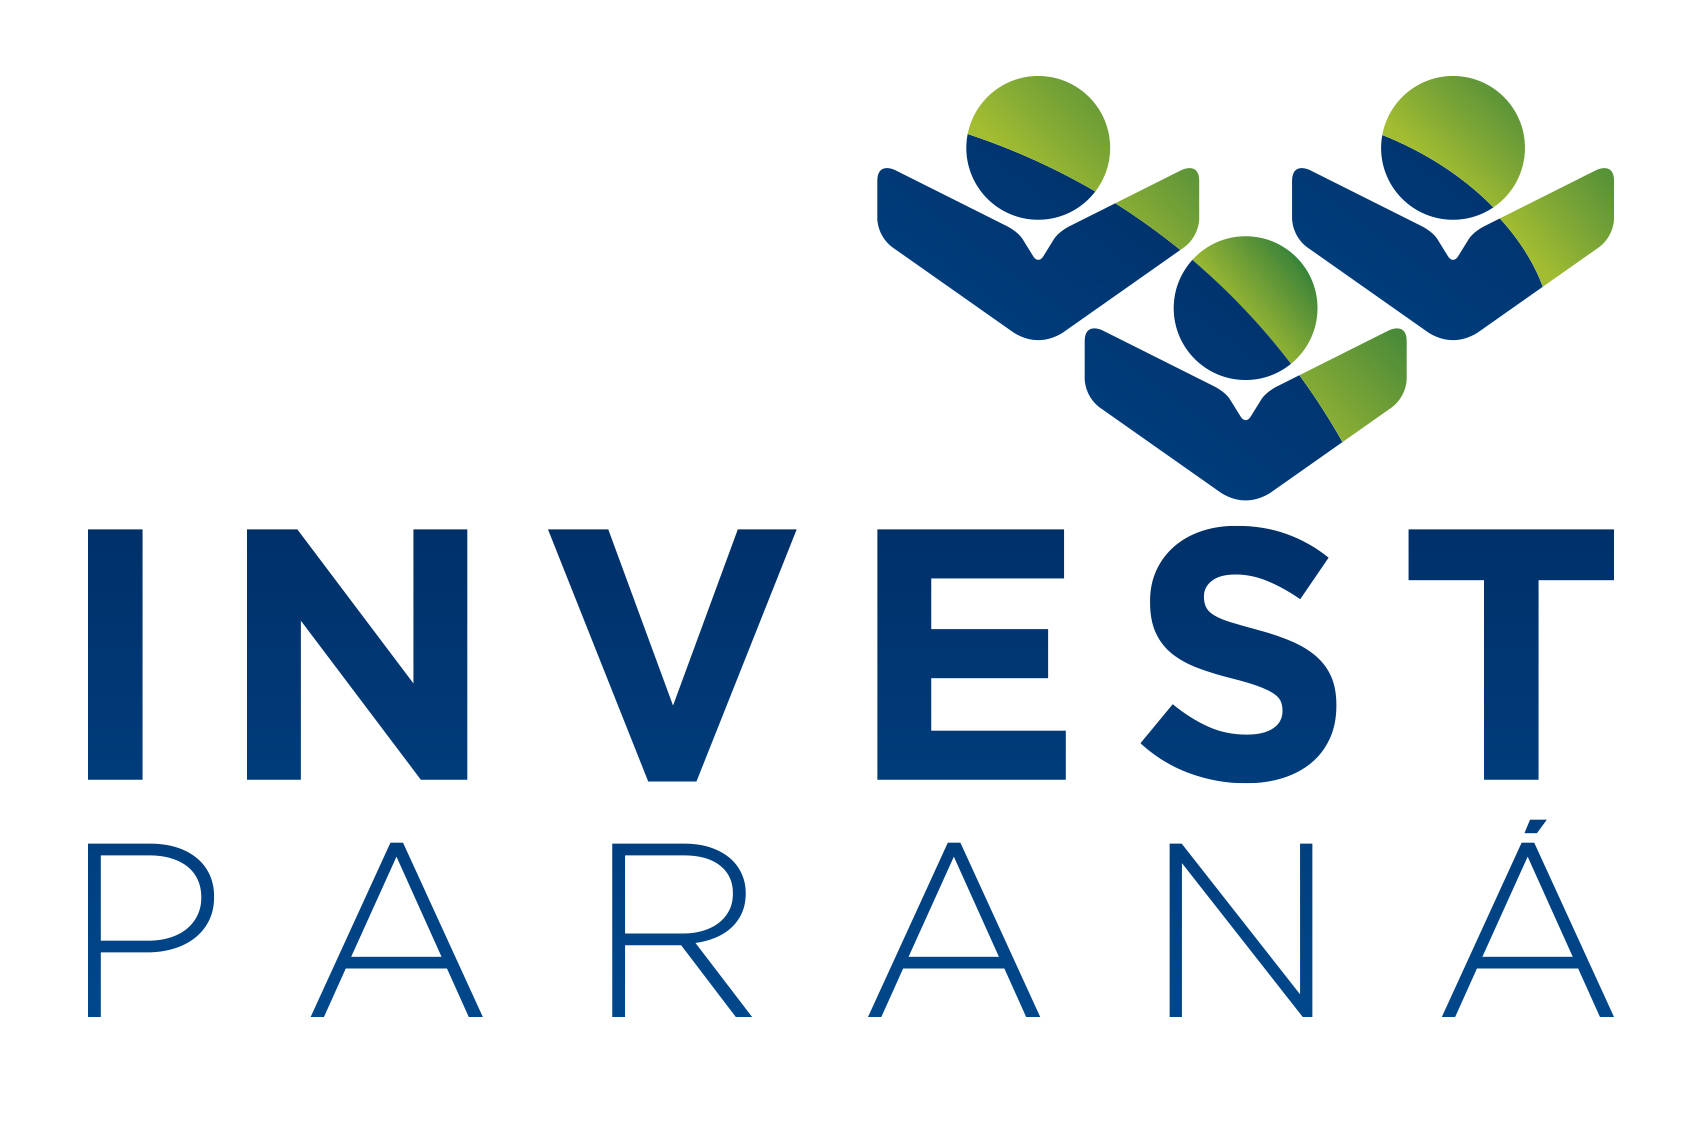 Invest Paraná conquista acesso a editais de cooperação com a União Europeia